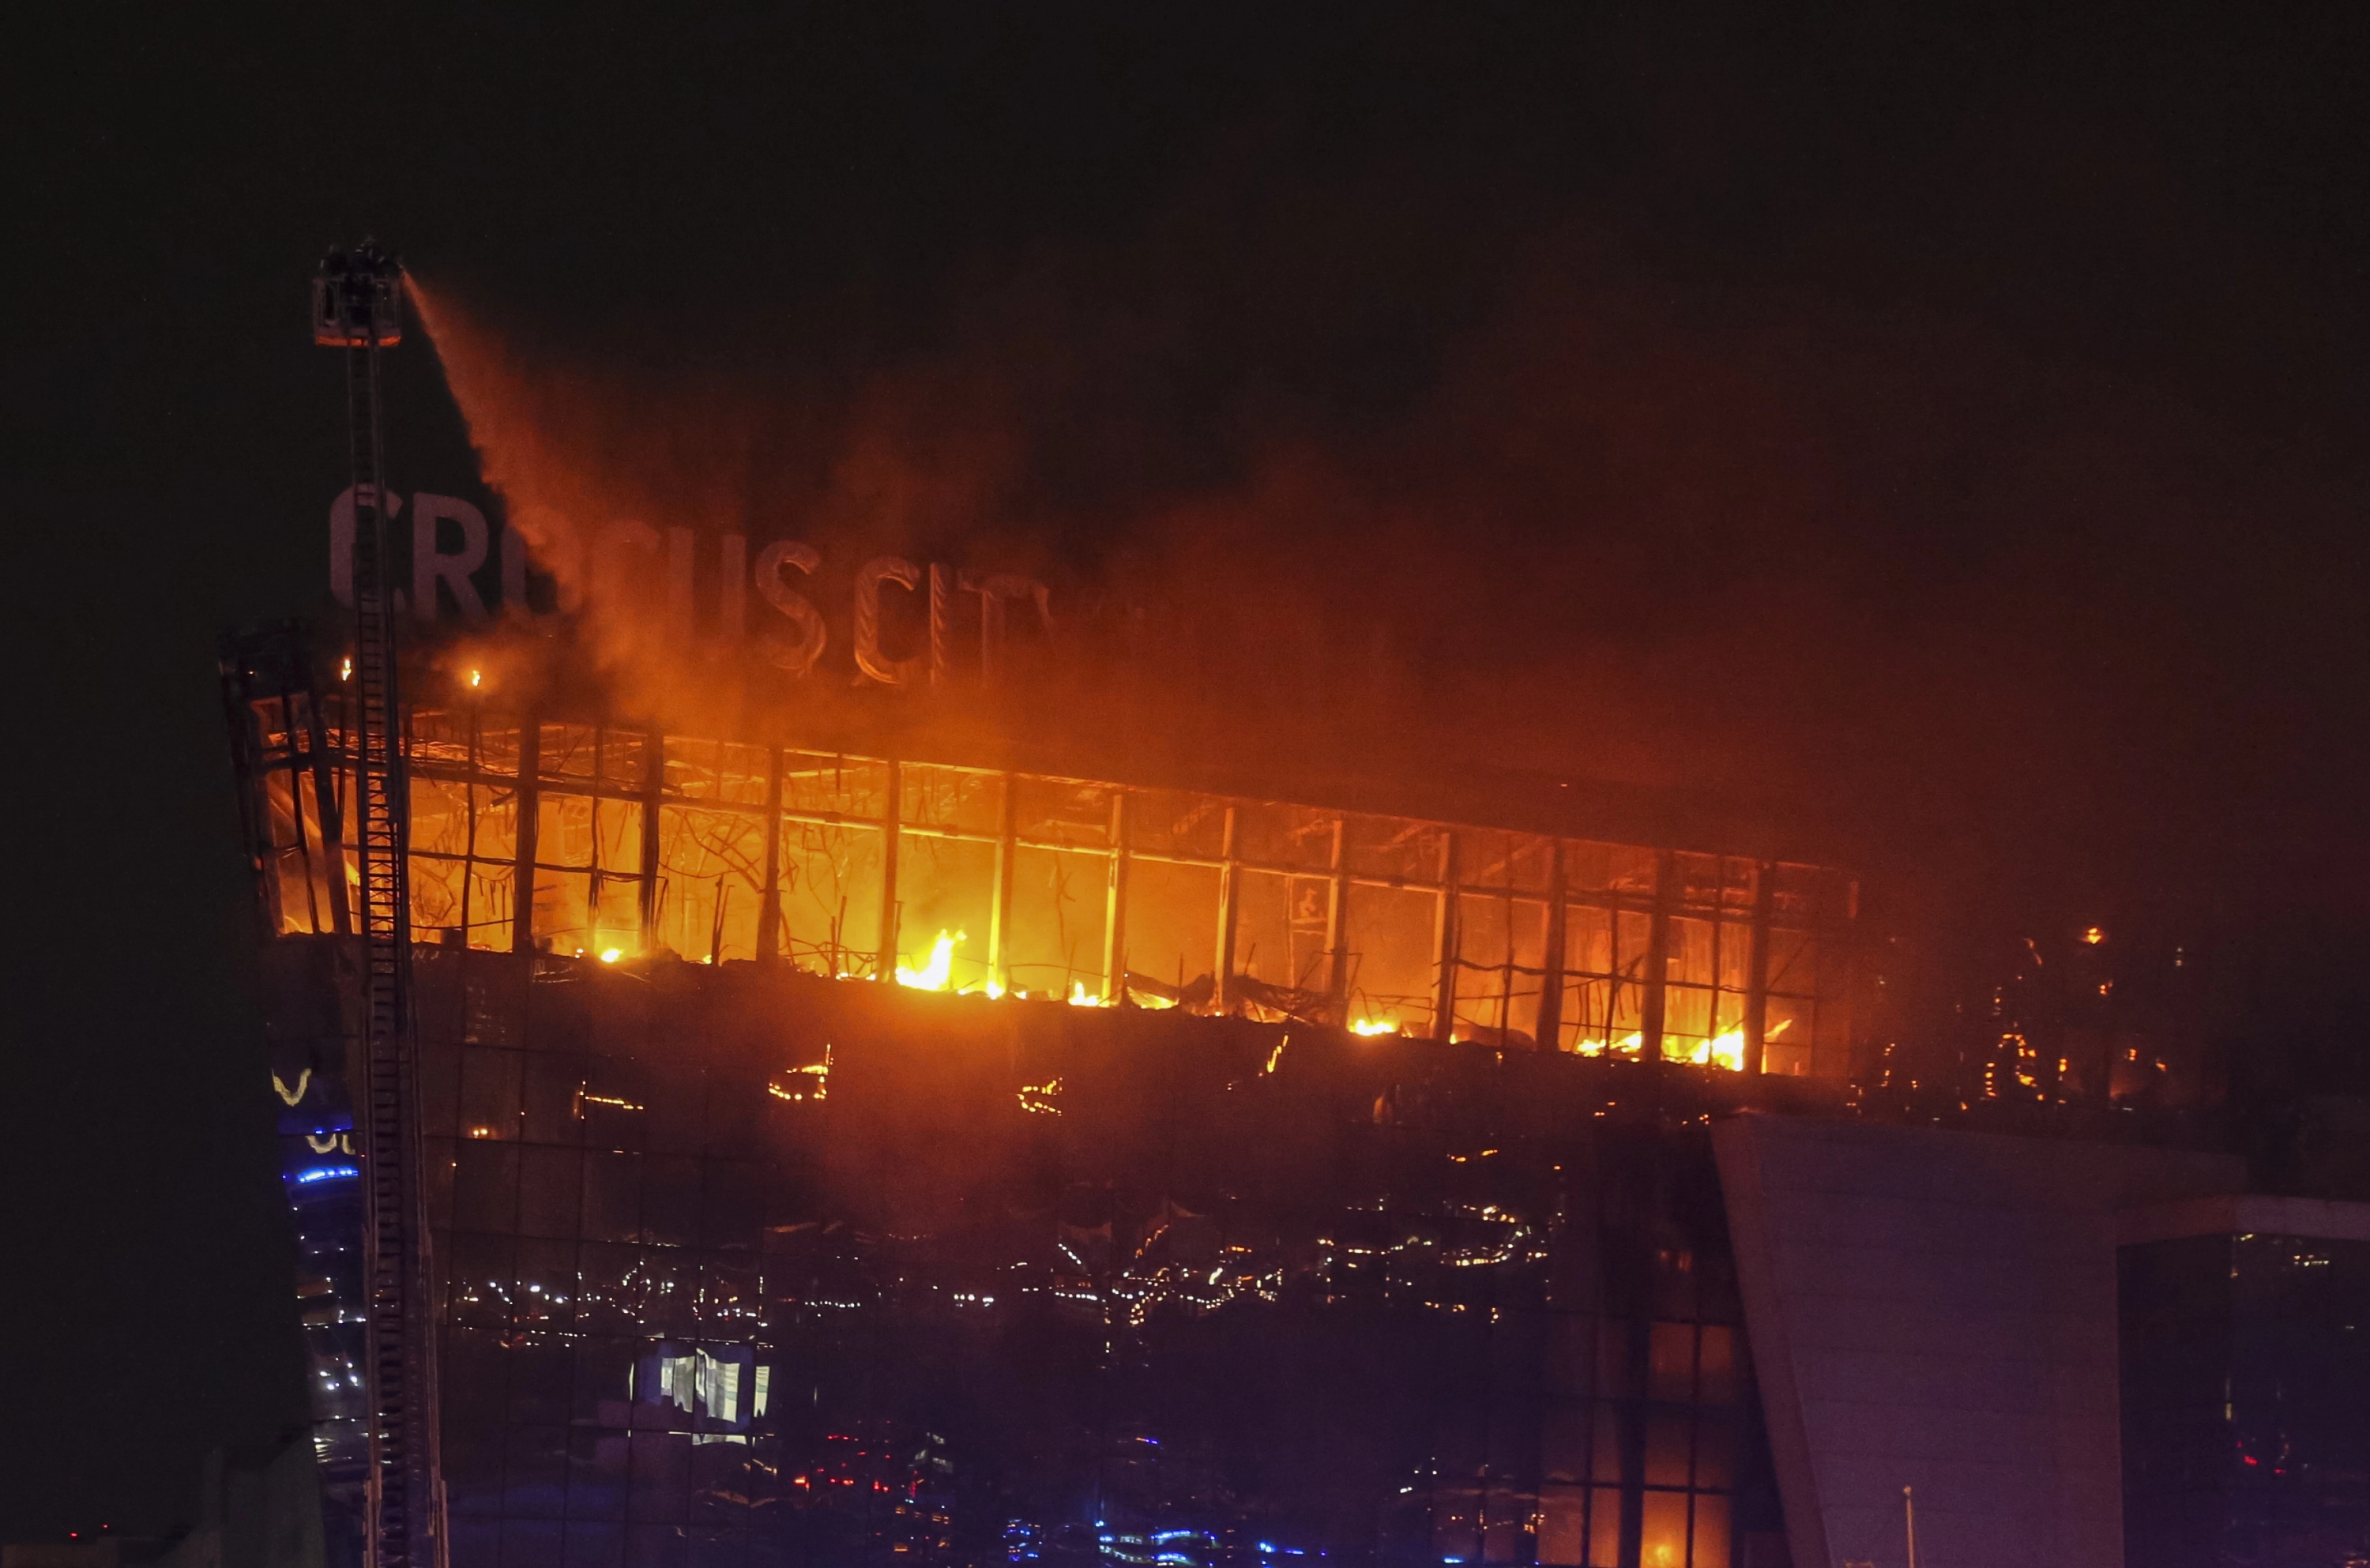 Qué se sabe del brutal atentado en la sala de conciertos en Moscú: cuántos terroristas atacaron y quién avisó a Putin